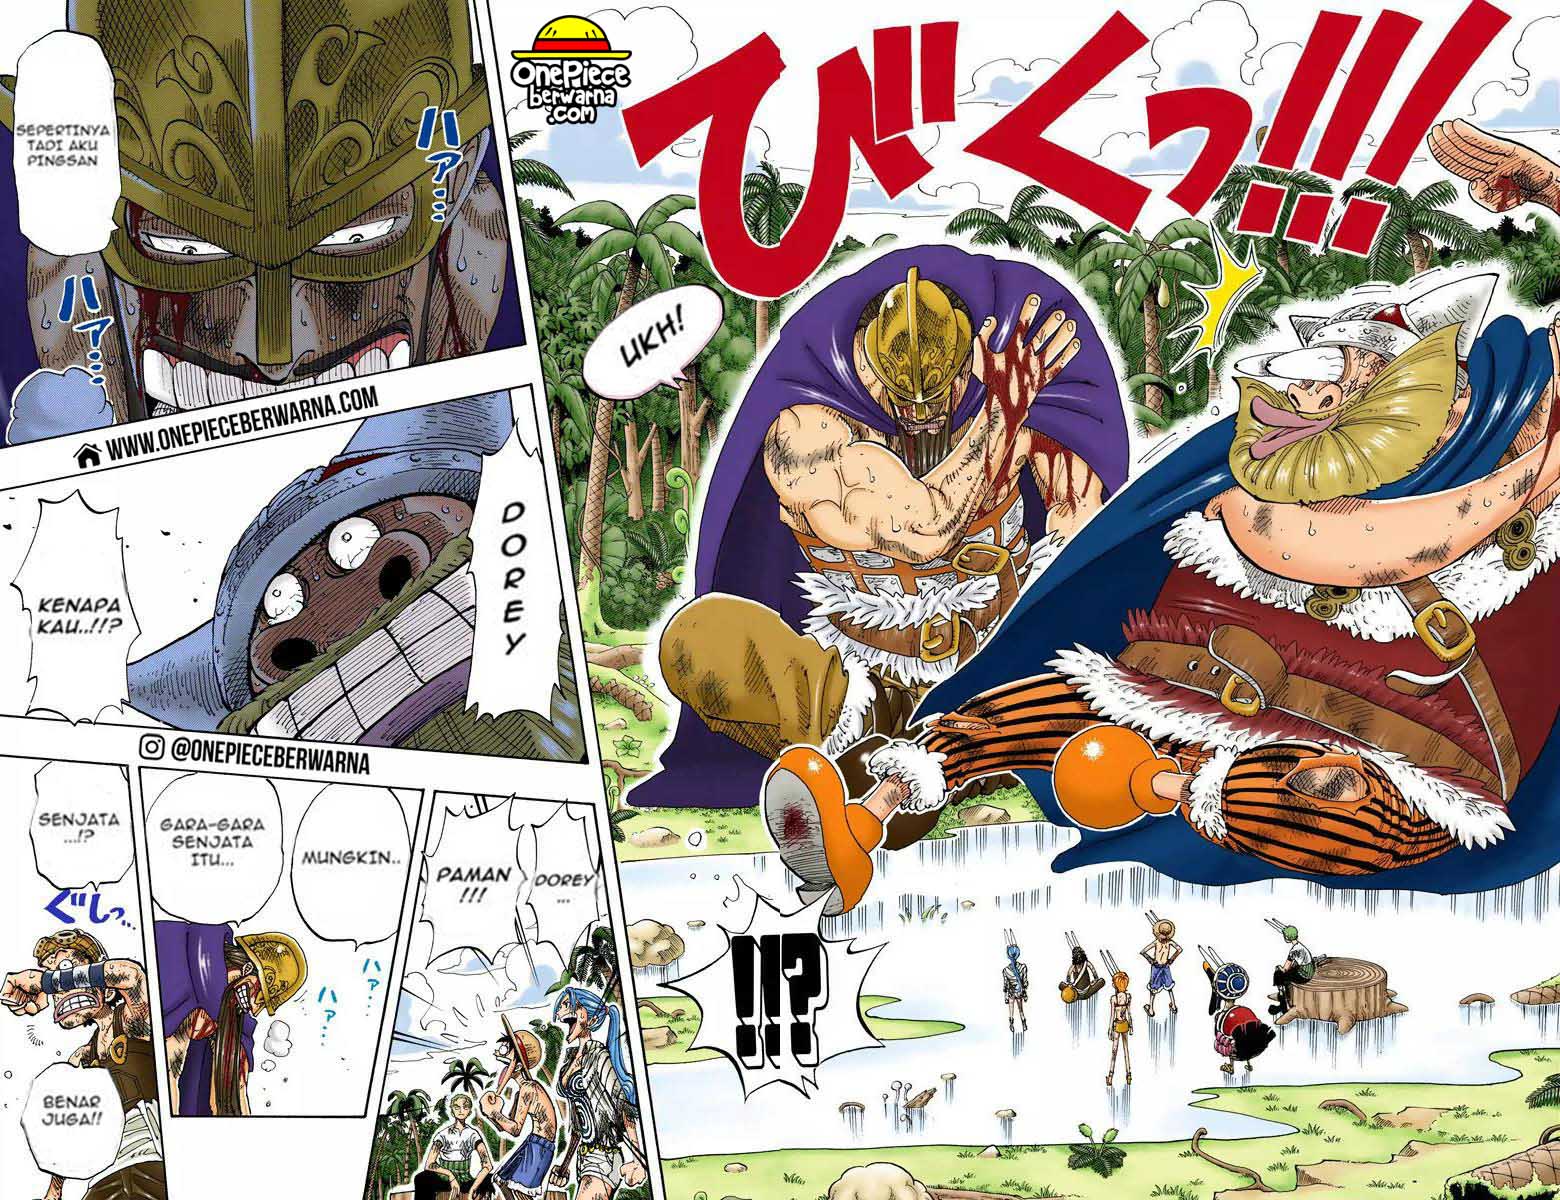 One Piece Berwarna Chapter 127